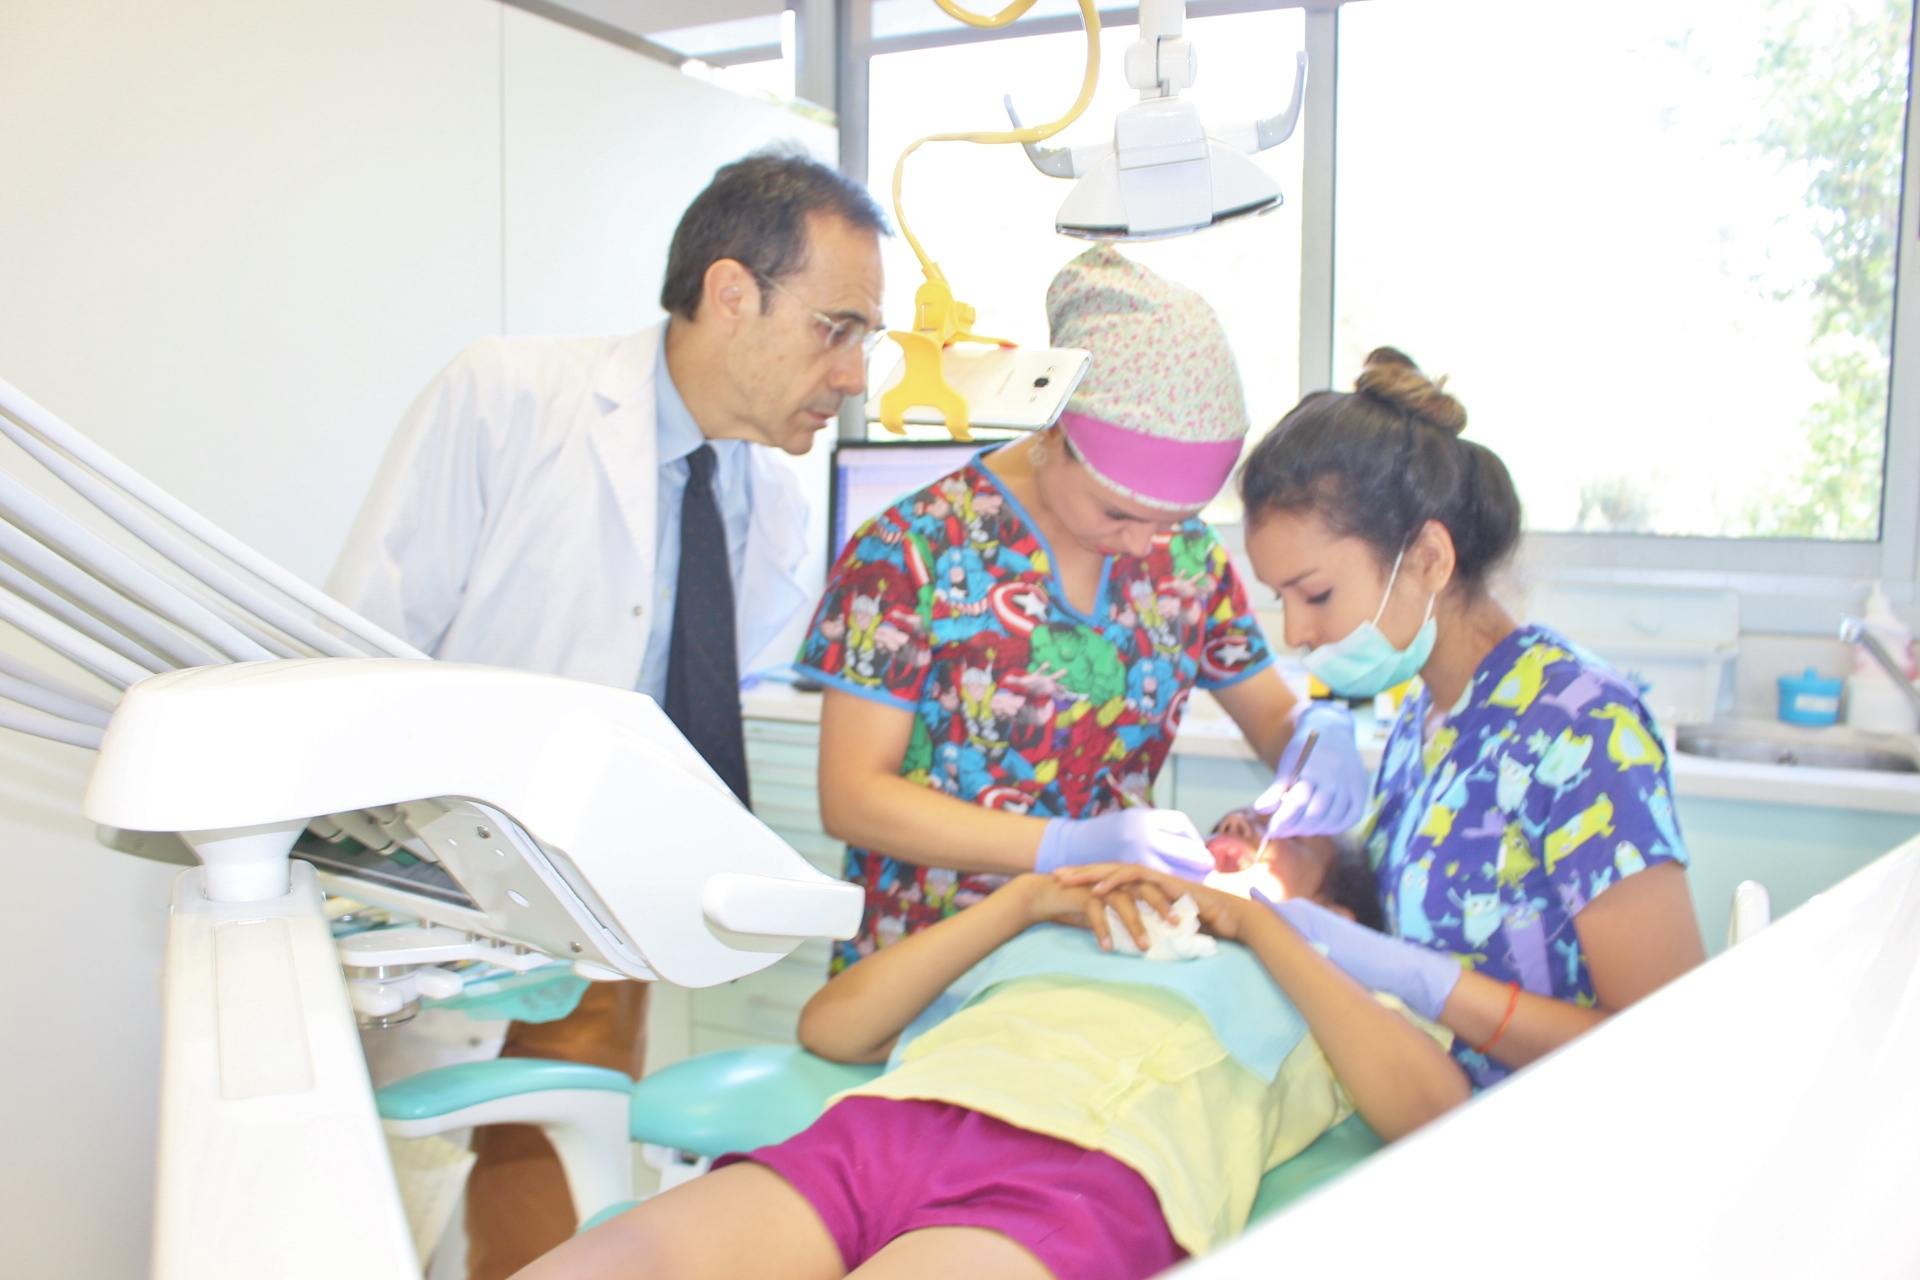 Inscríbete al curso de “Nuevas tendencias en Odontopediatría” de la Universitat de Barcelona